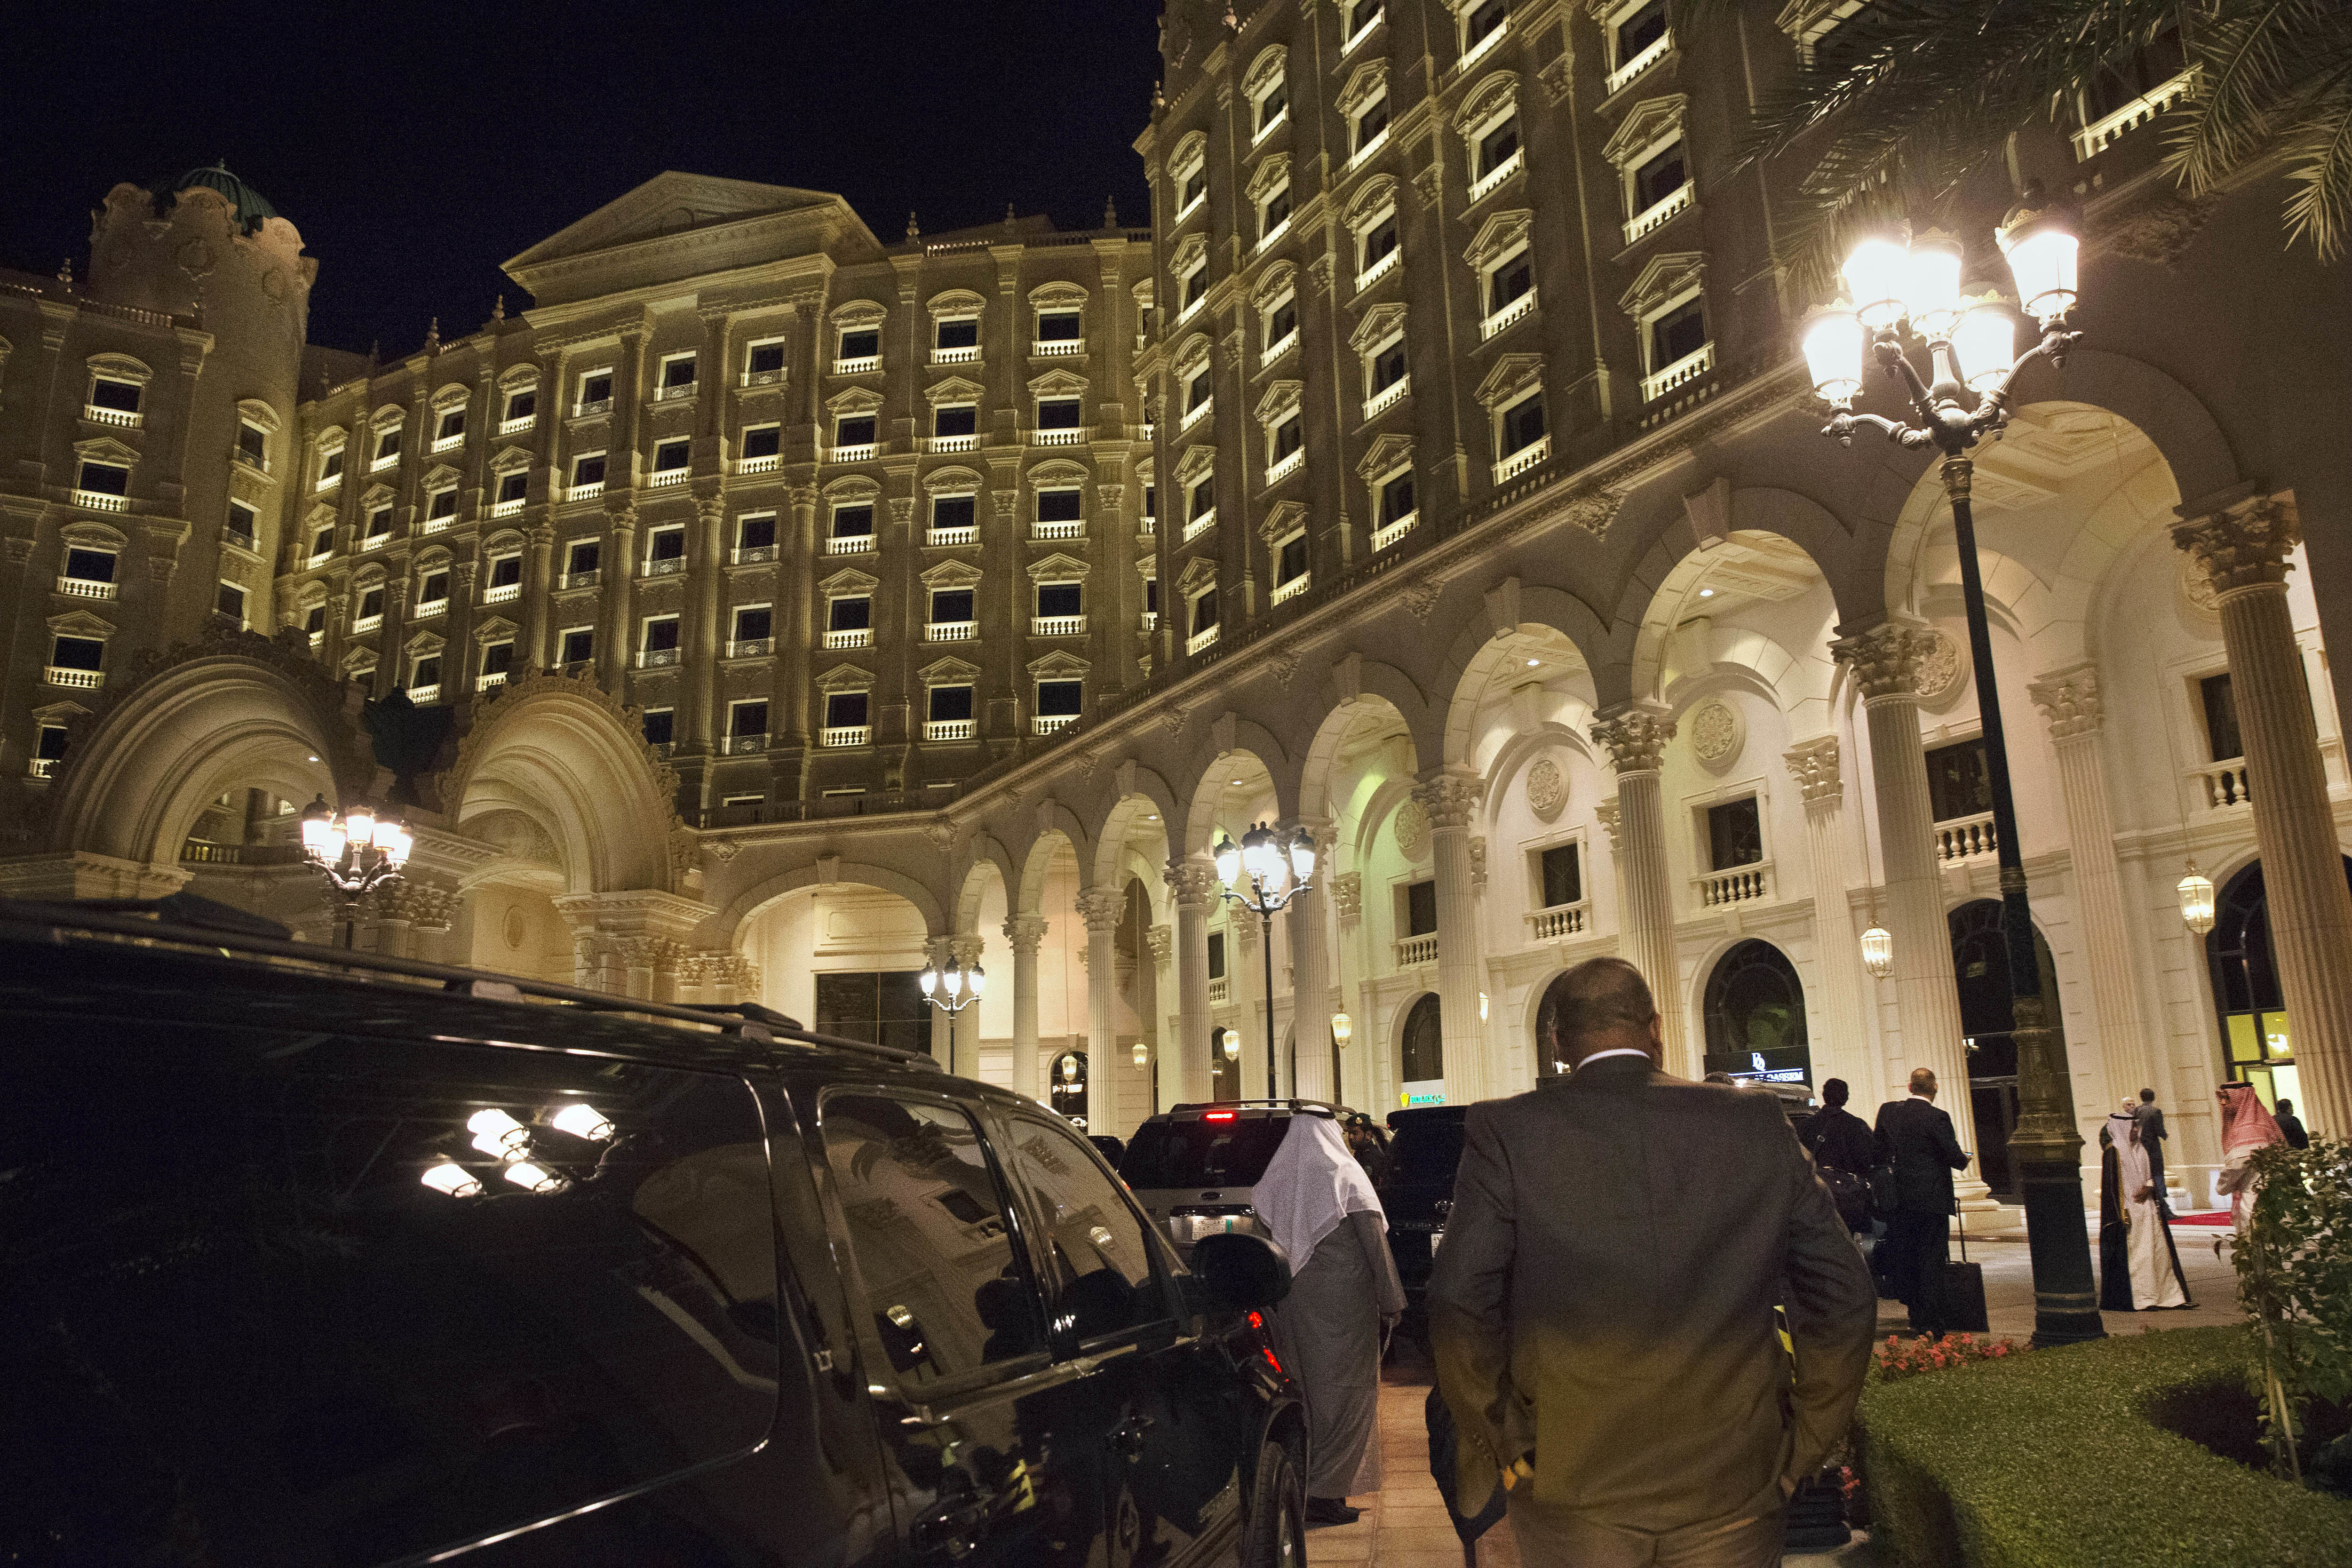 Хотел ”Риц-Карлтън”, който се превърна в арест за саудитските милиардери